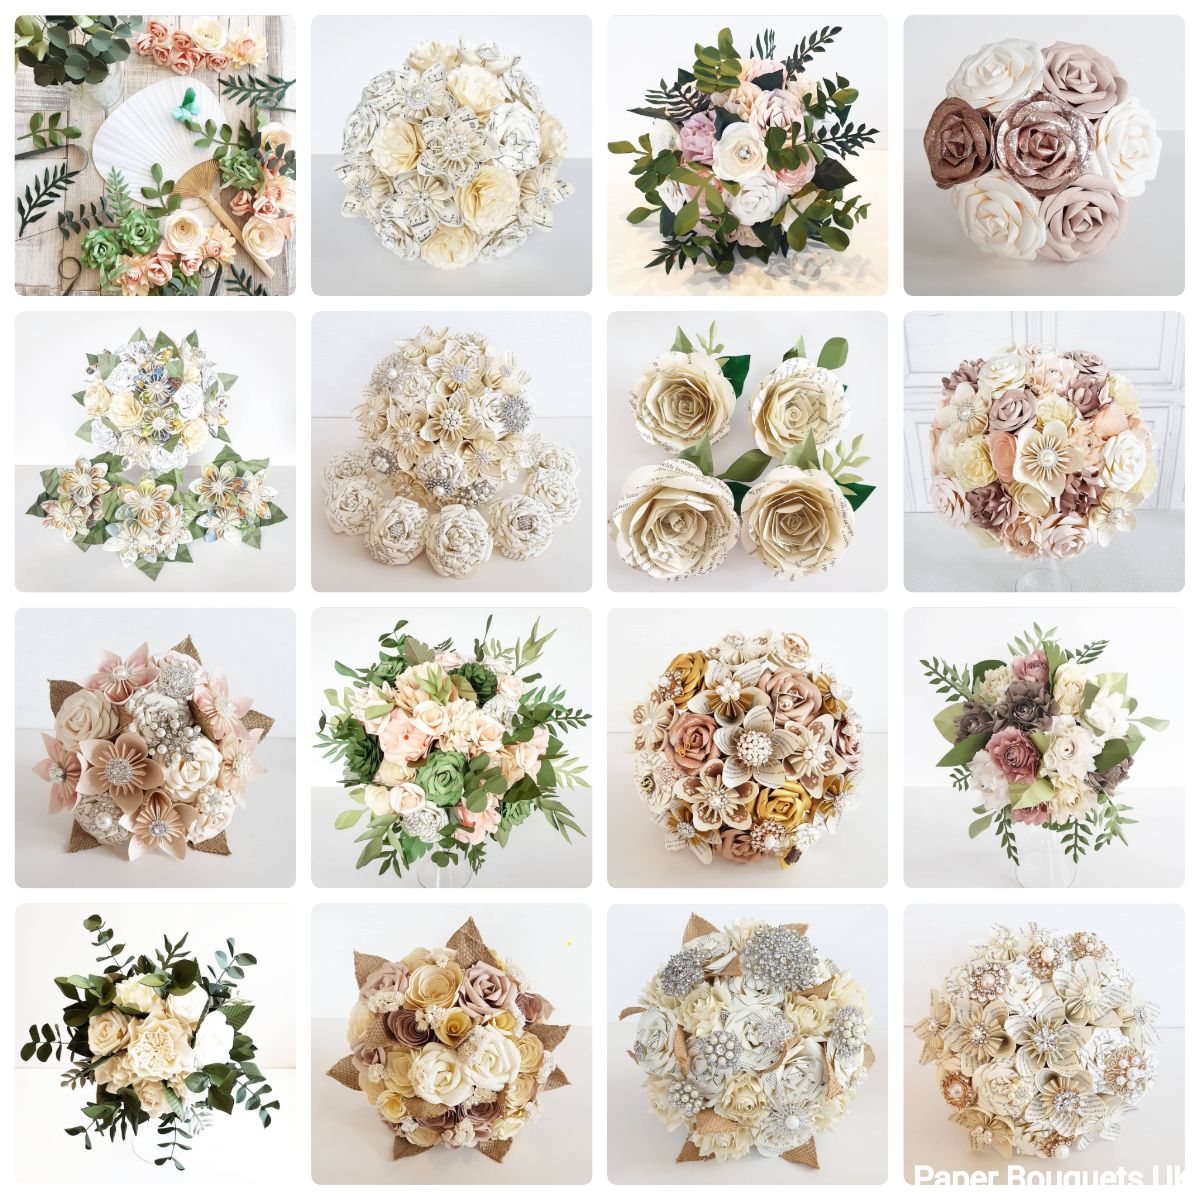 Paper Bouquets UK-Image-103